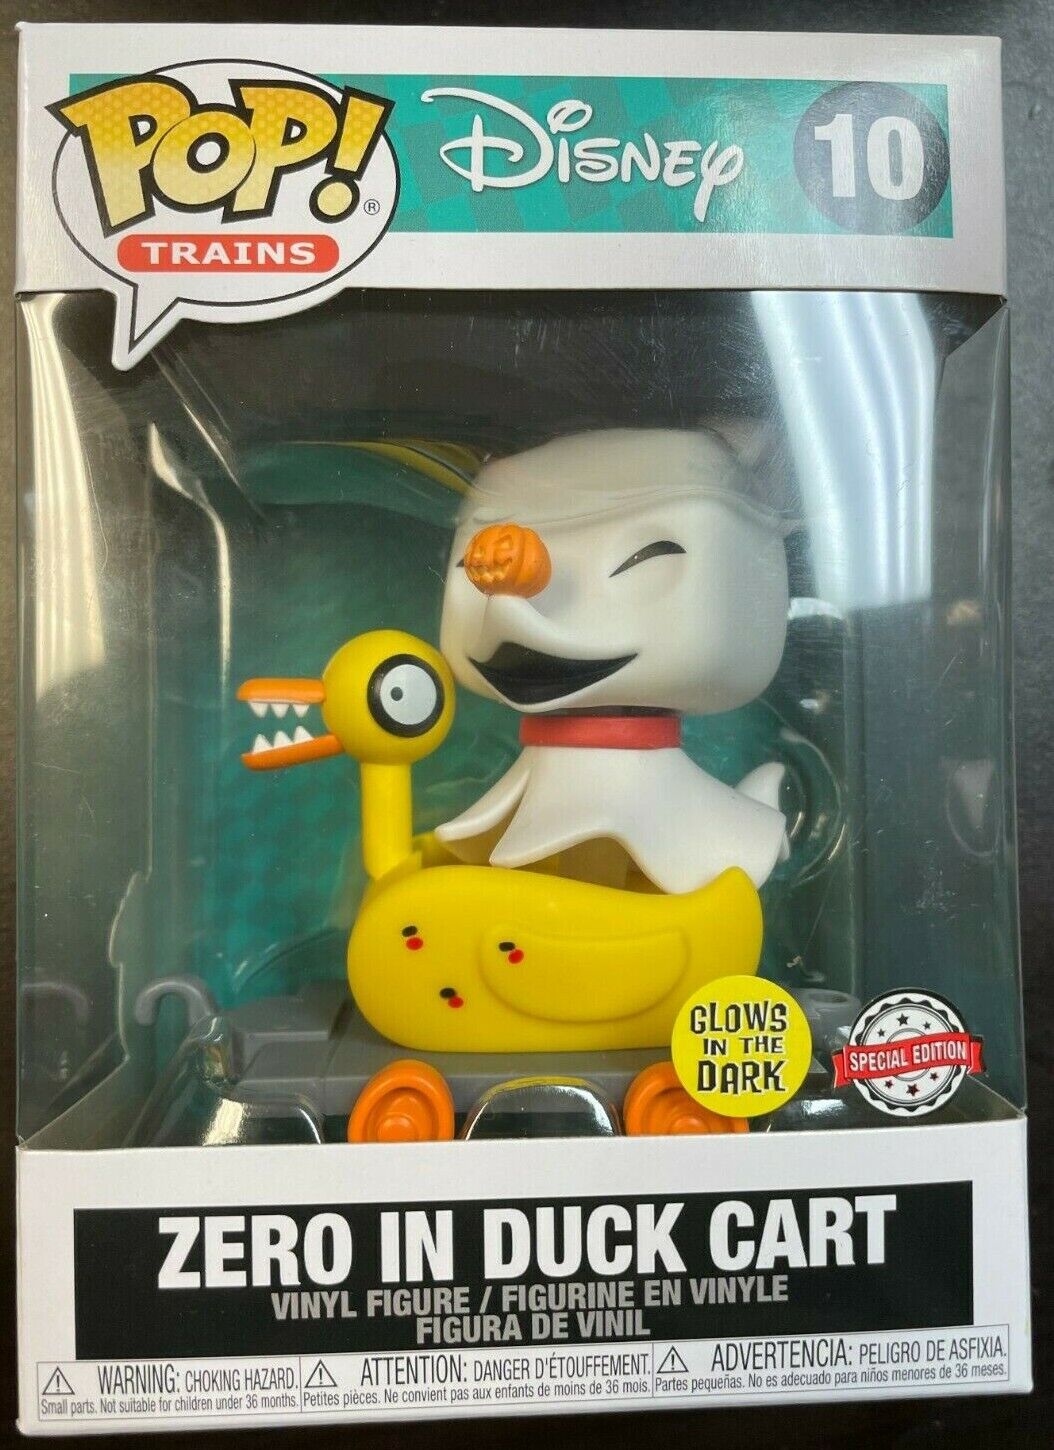 FUNKO POP Zero in Duck Cart Glow In the Dark Disney Trains Special Exclusive